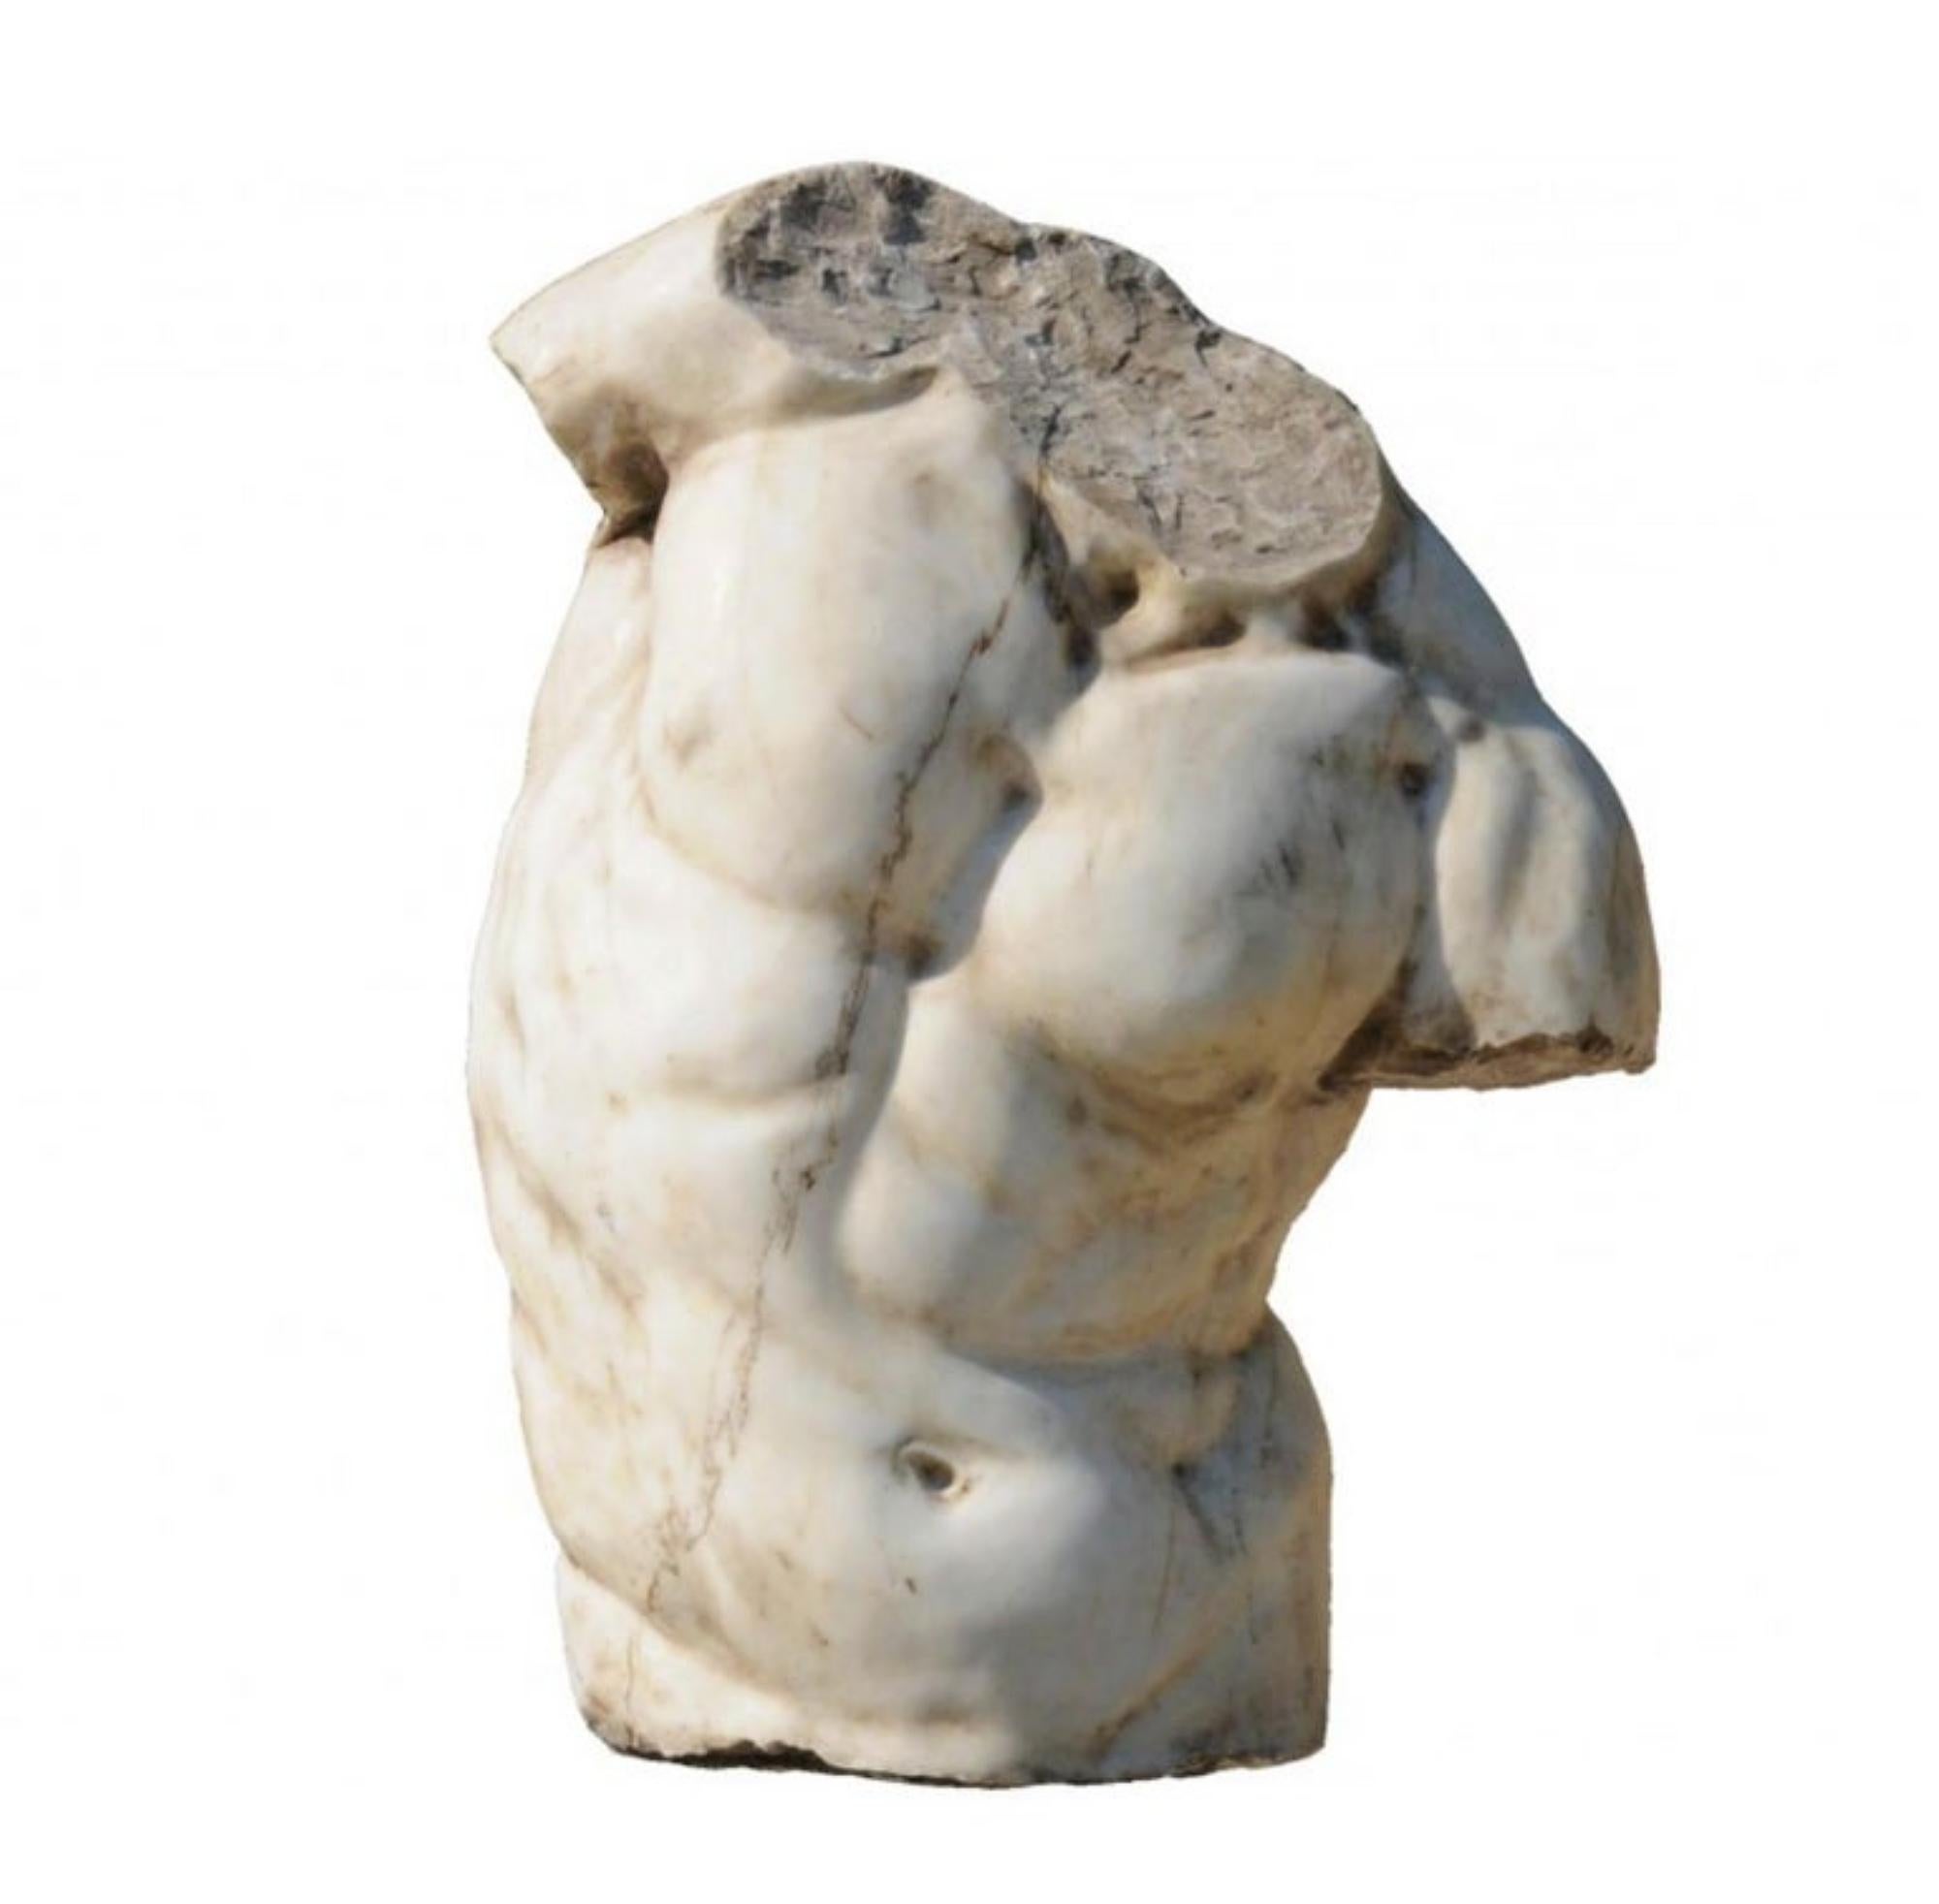 Erstaunlicher Torso Gaddi aus weißem Carrara-Marmor Ende 19./20. Jahrhundert.
Italien
Männlicher Torso eines Zentauren aus dem 2. Jahrhundert vor Christus. Genannt 